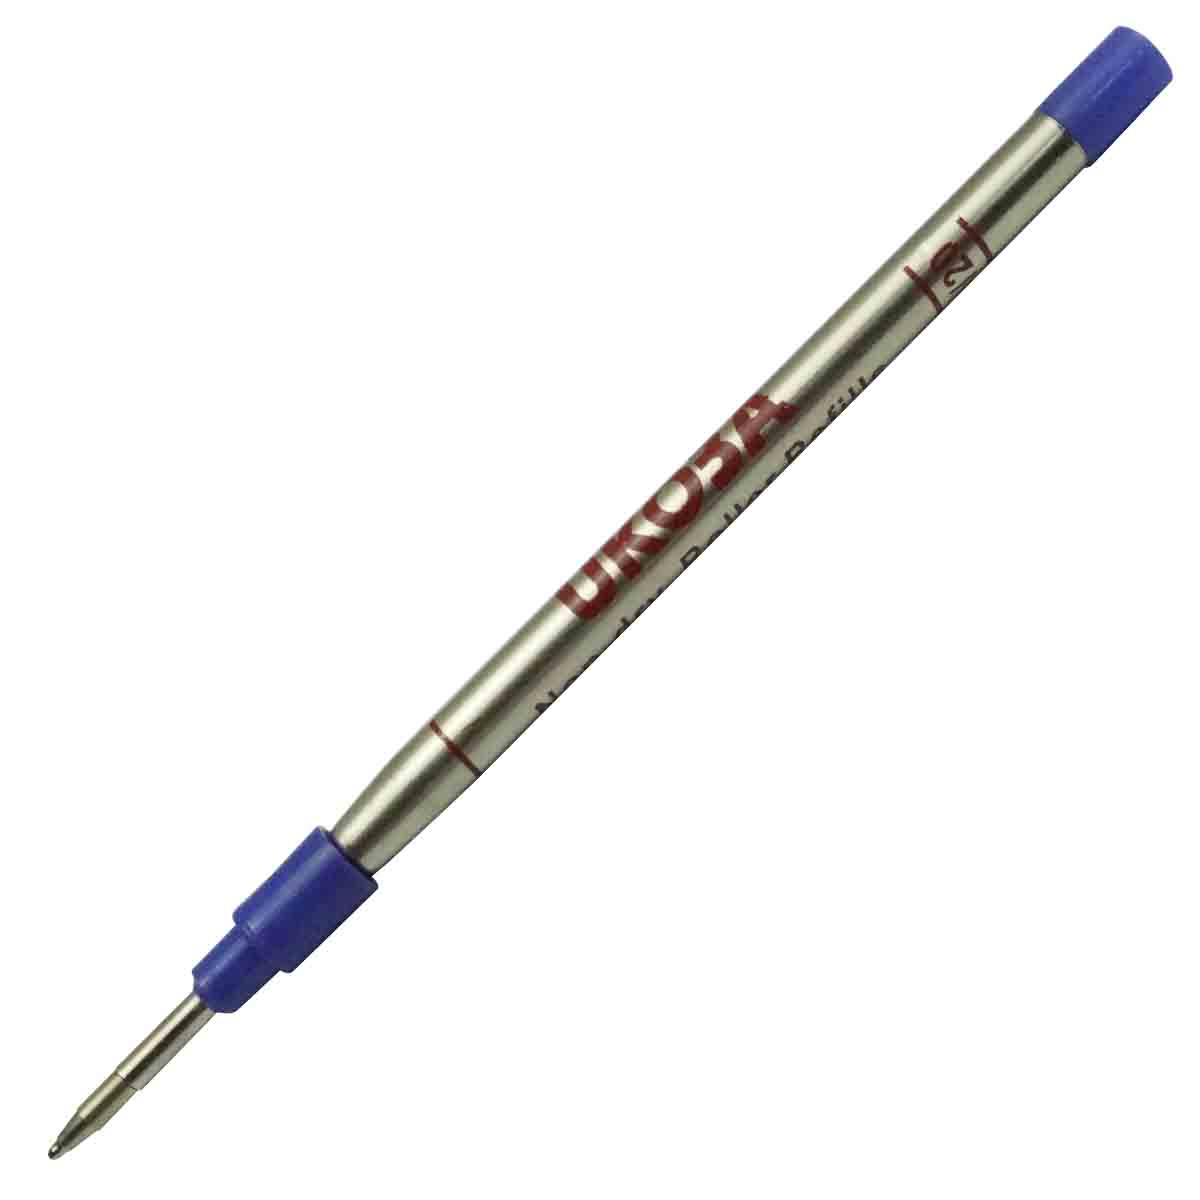 Ukoba 0.7mm Red Color Ball Pen Refill for Roller Ball Pens Model 71051